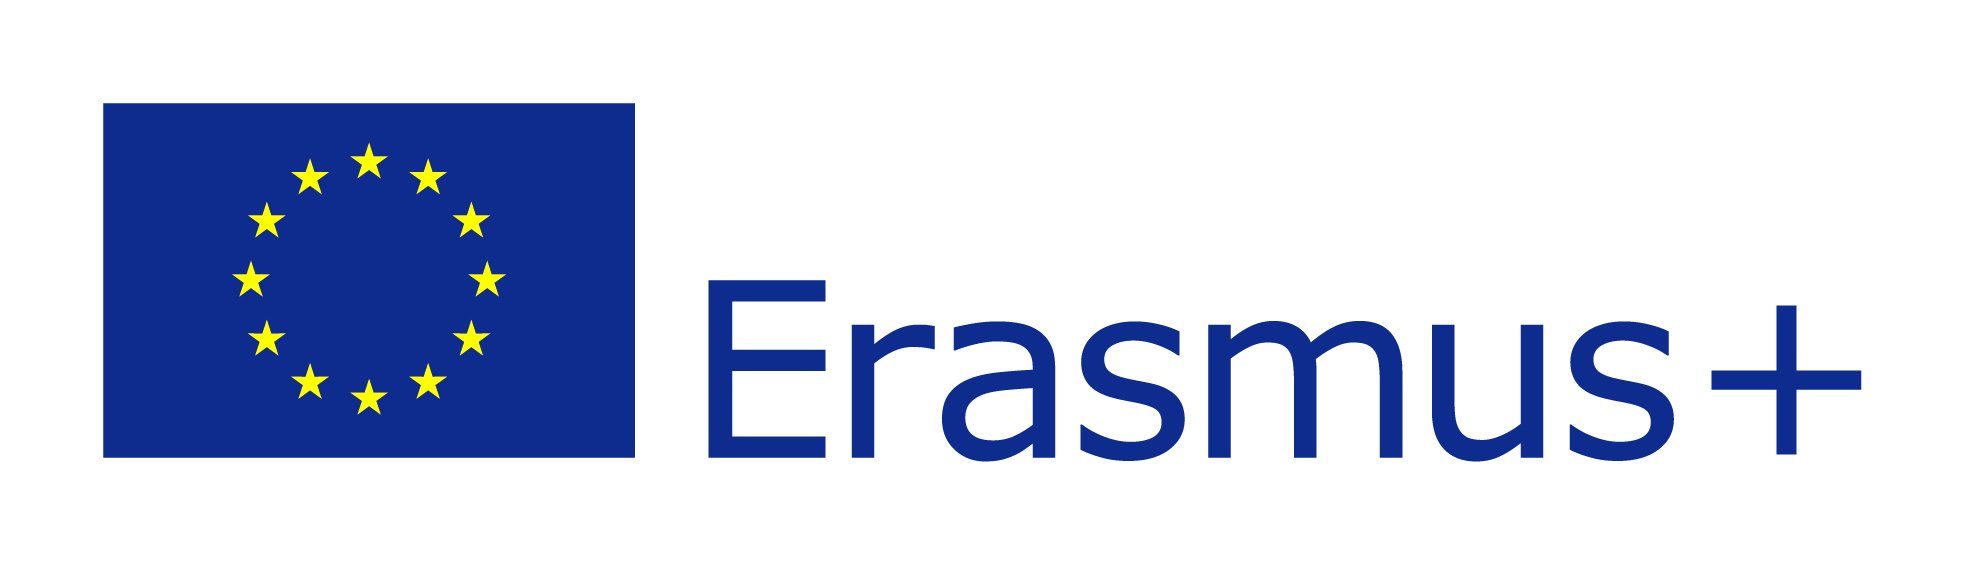 EU-Erasmus-logo